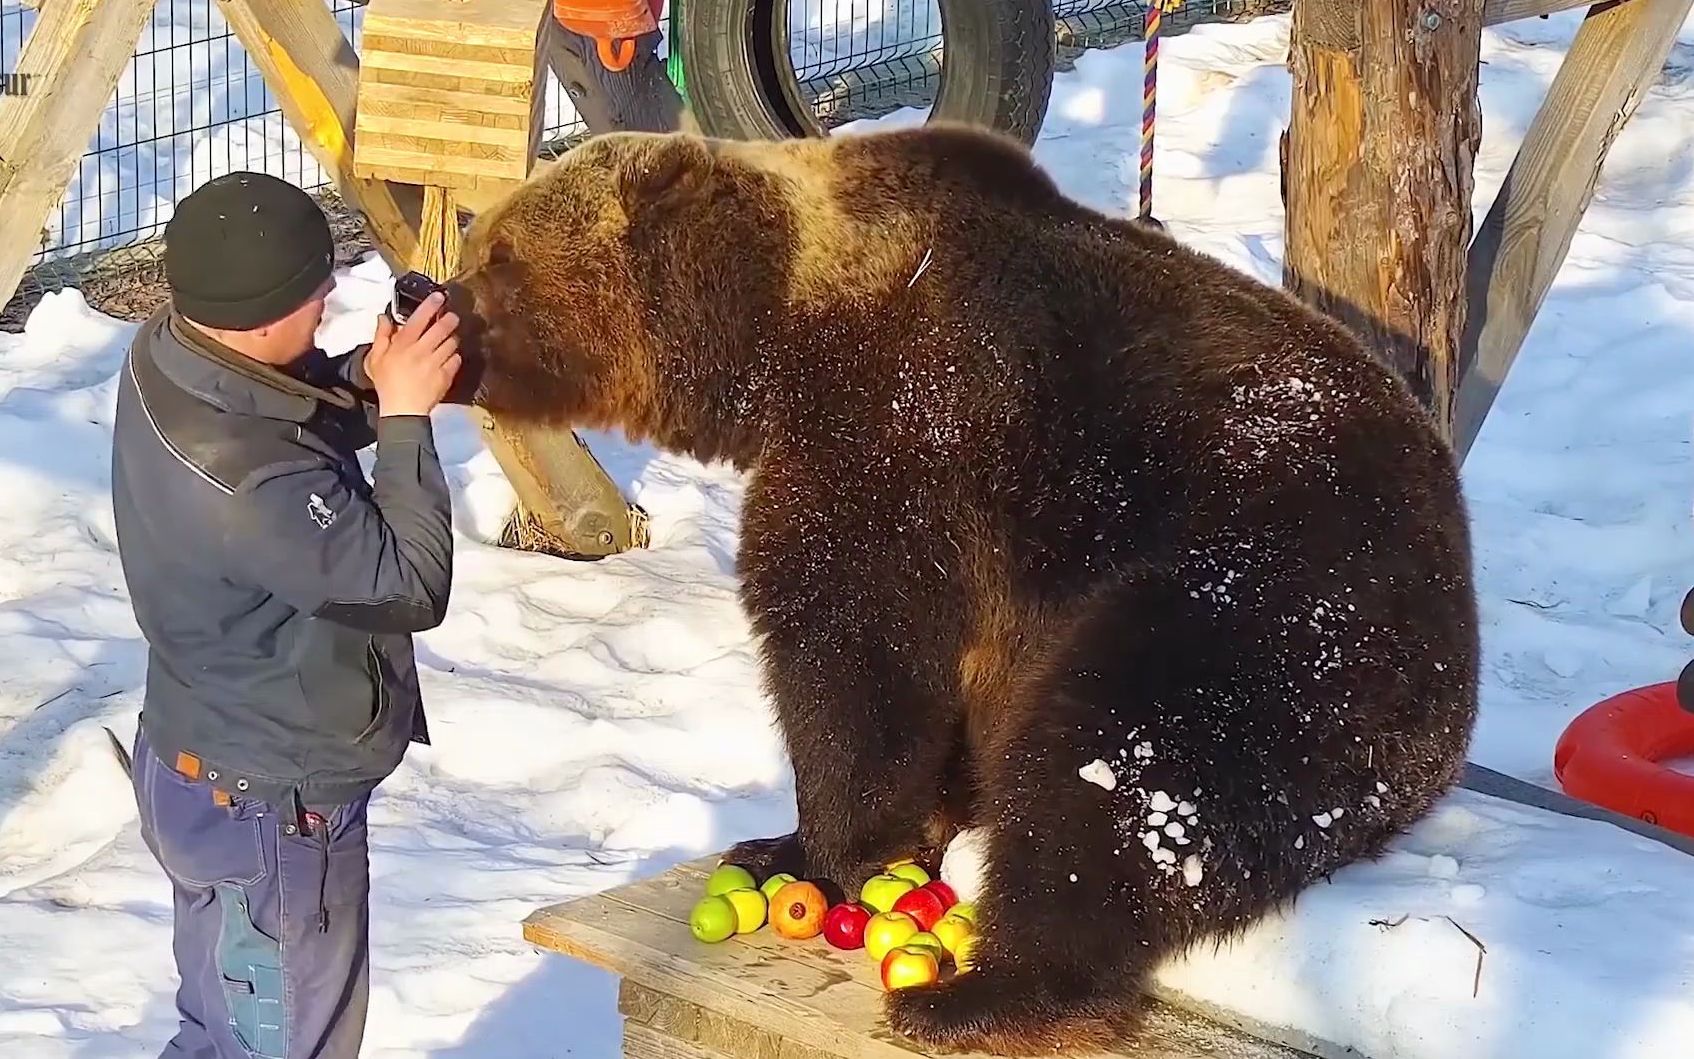 俄罗斯人是如何喂熊的?